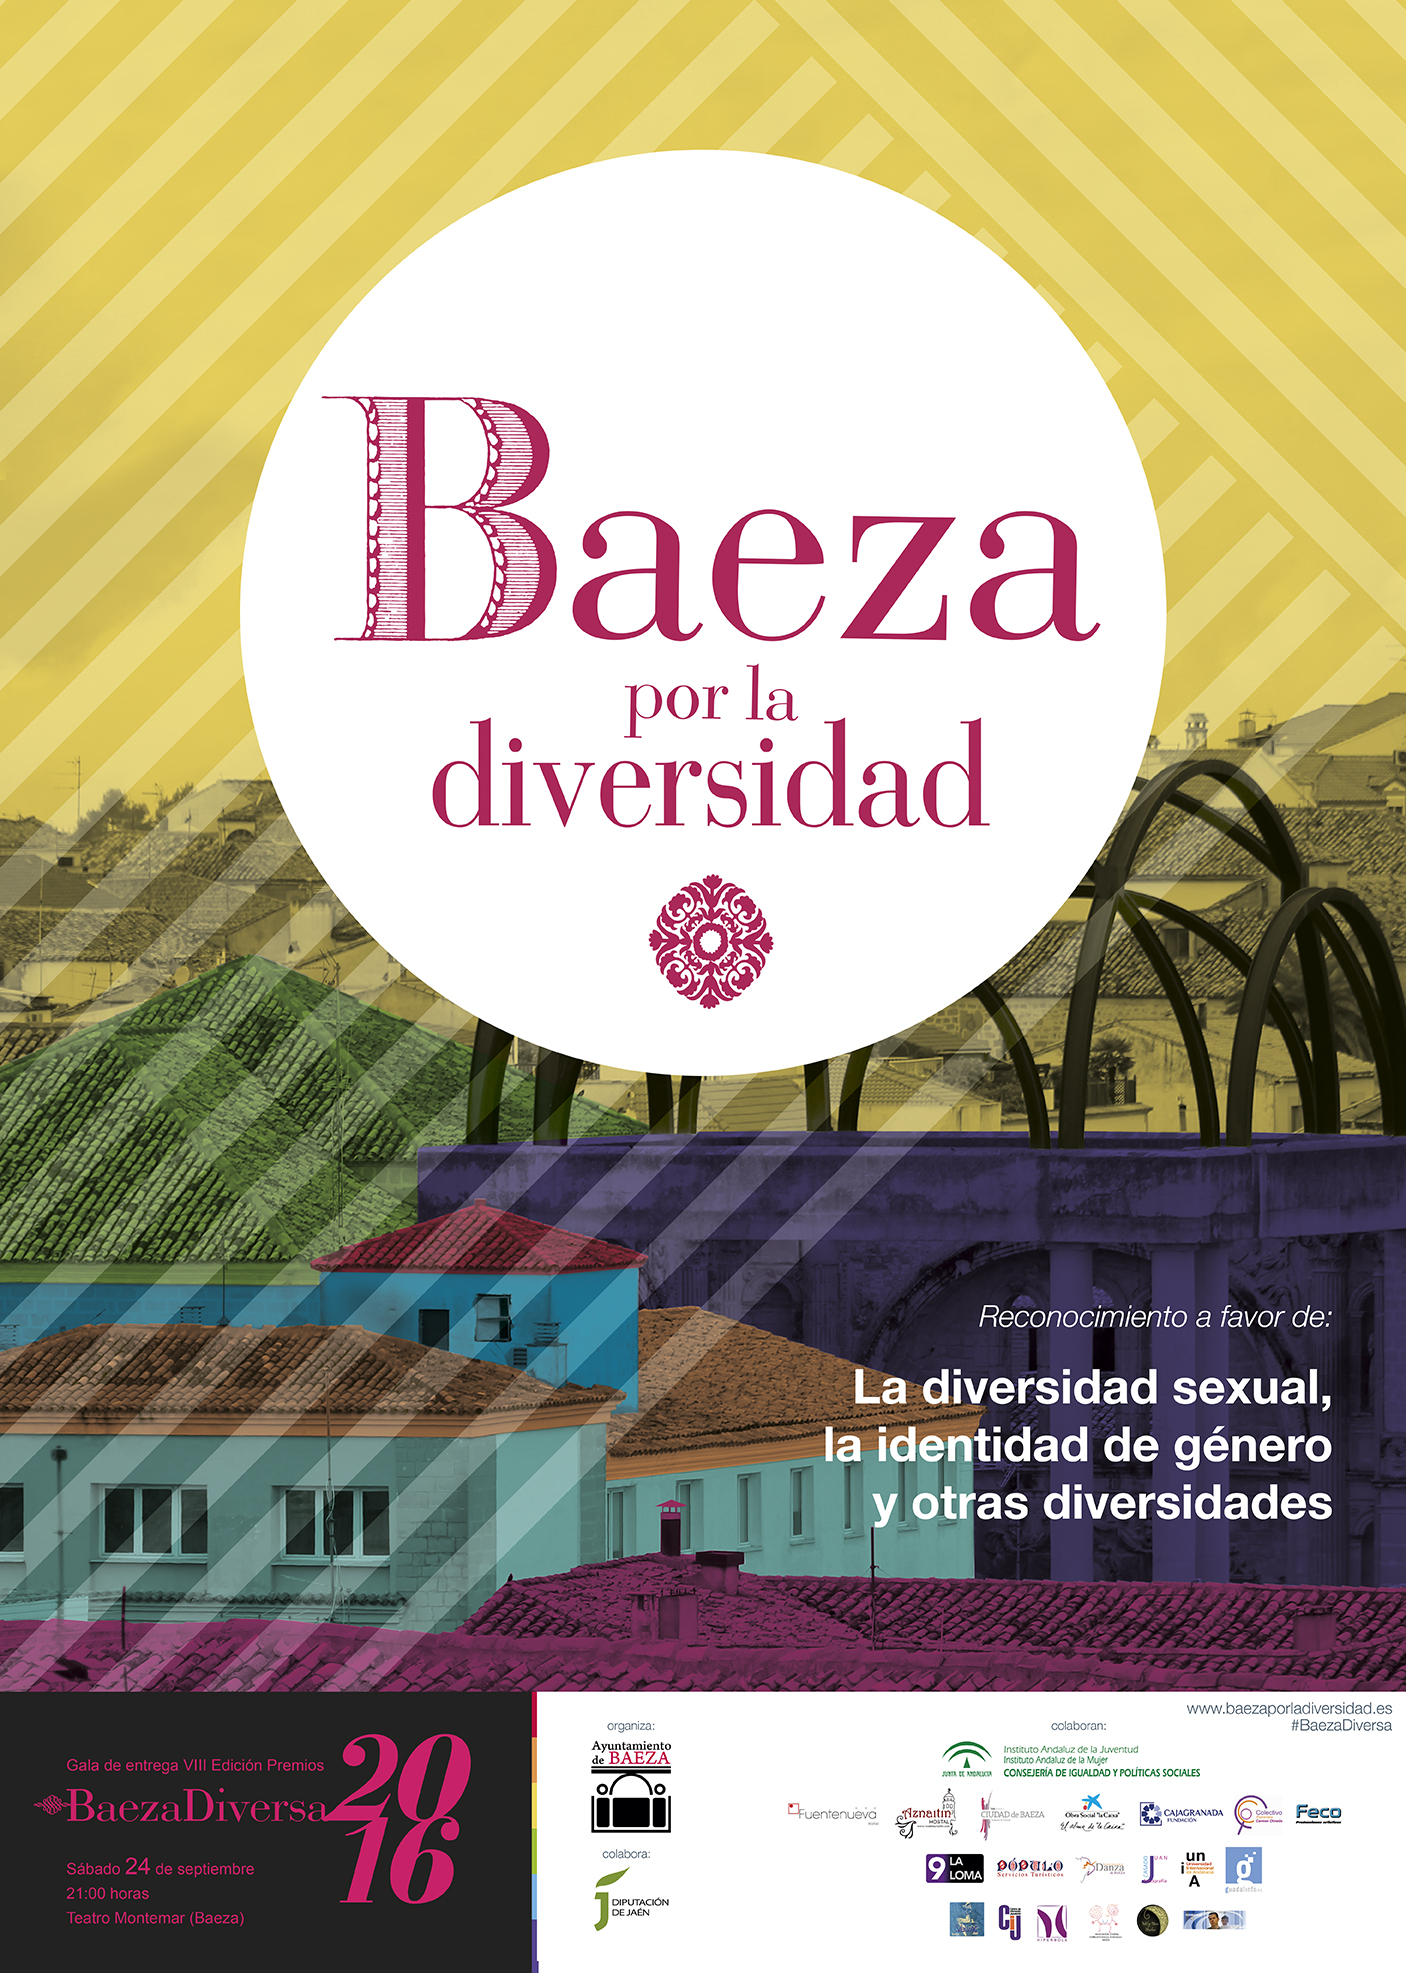 ¿Por qué Baeza es un referente de la diversidad y los derechos LGTB?